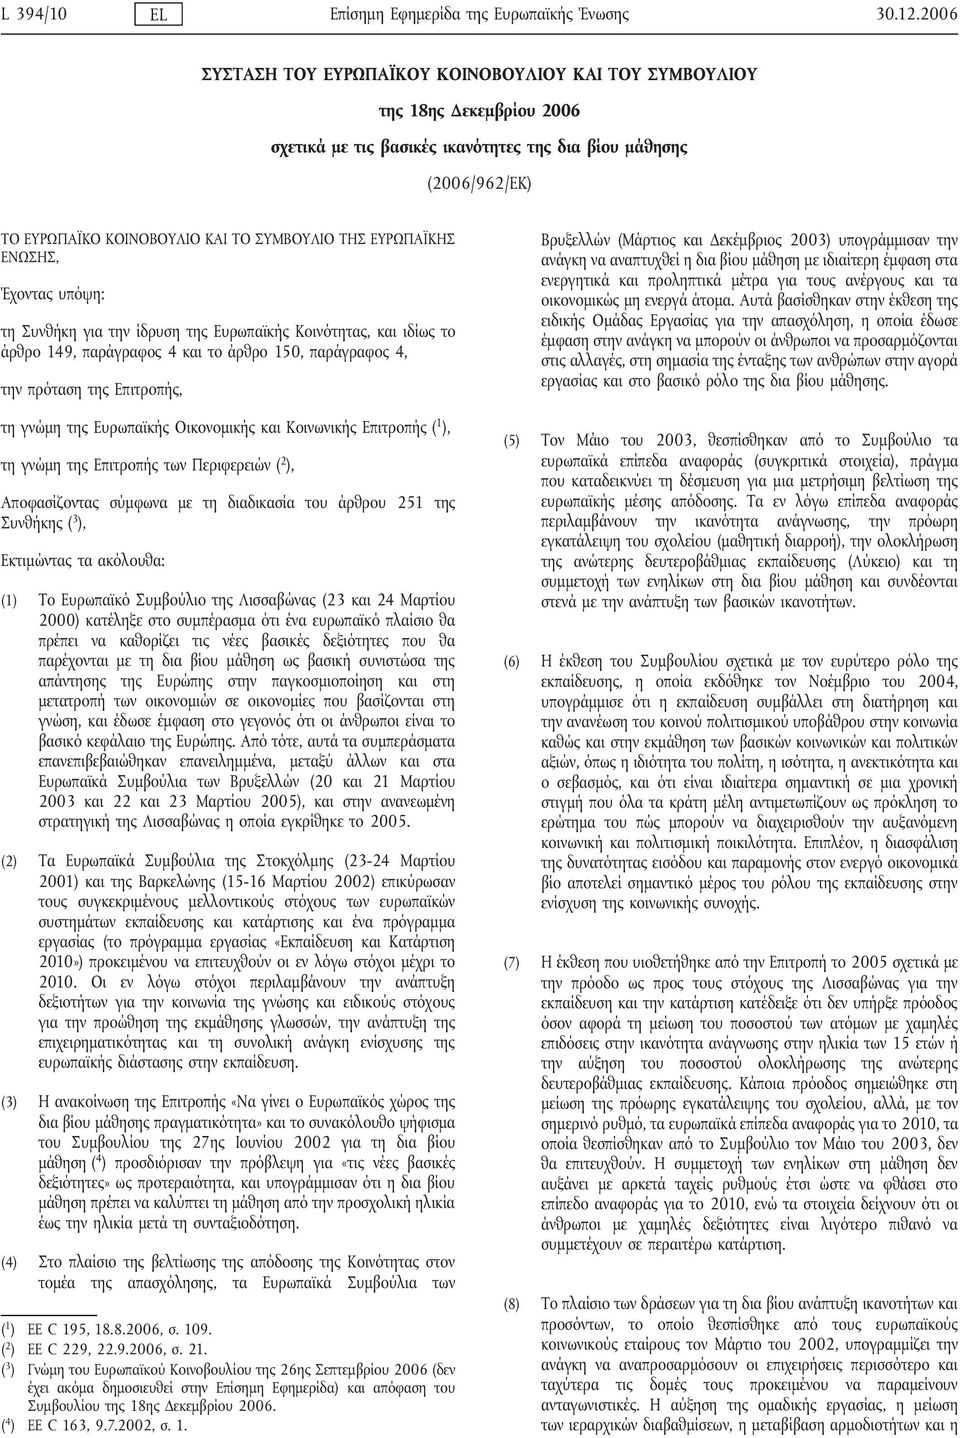 ΕΥΡΩΠΑΪΚΗΣ ΕΝΩΣΗΣ, Έχοντας υπόψη: τη Συνθήκη για την ίδρυση της Ευρωπαϊκής Κοινότητας, και ιδίως το άρθρο 149, παράγραφος 4 και το άρθρο 150, παράγραφος 4, την πρόταση της Επιτροπής, τη γνώμη της